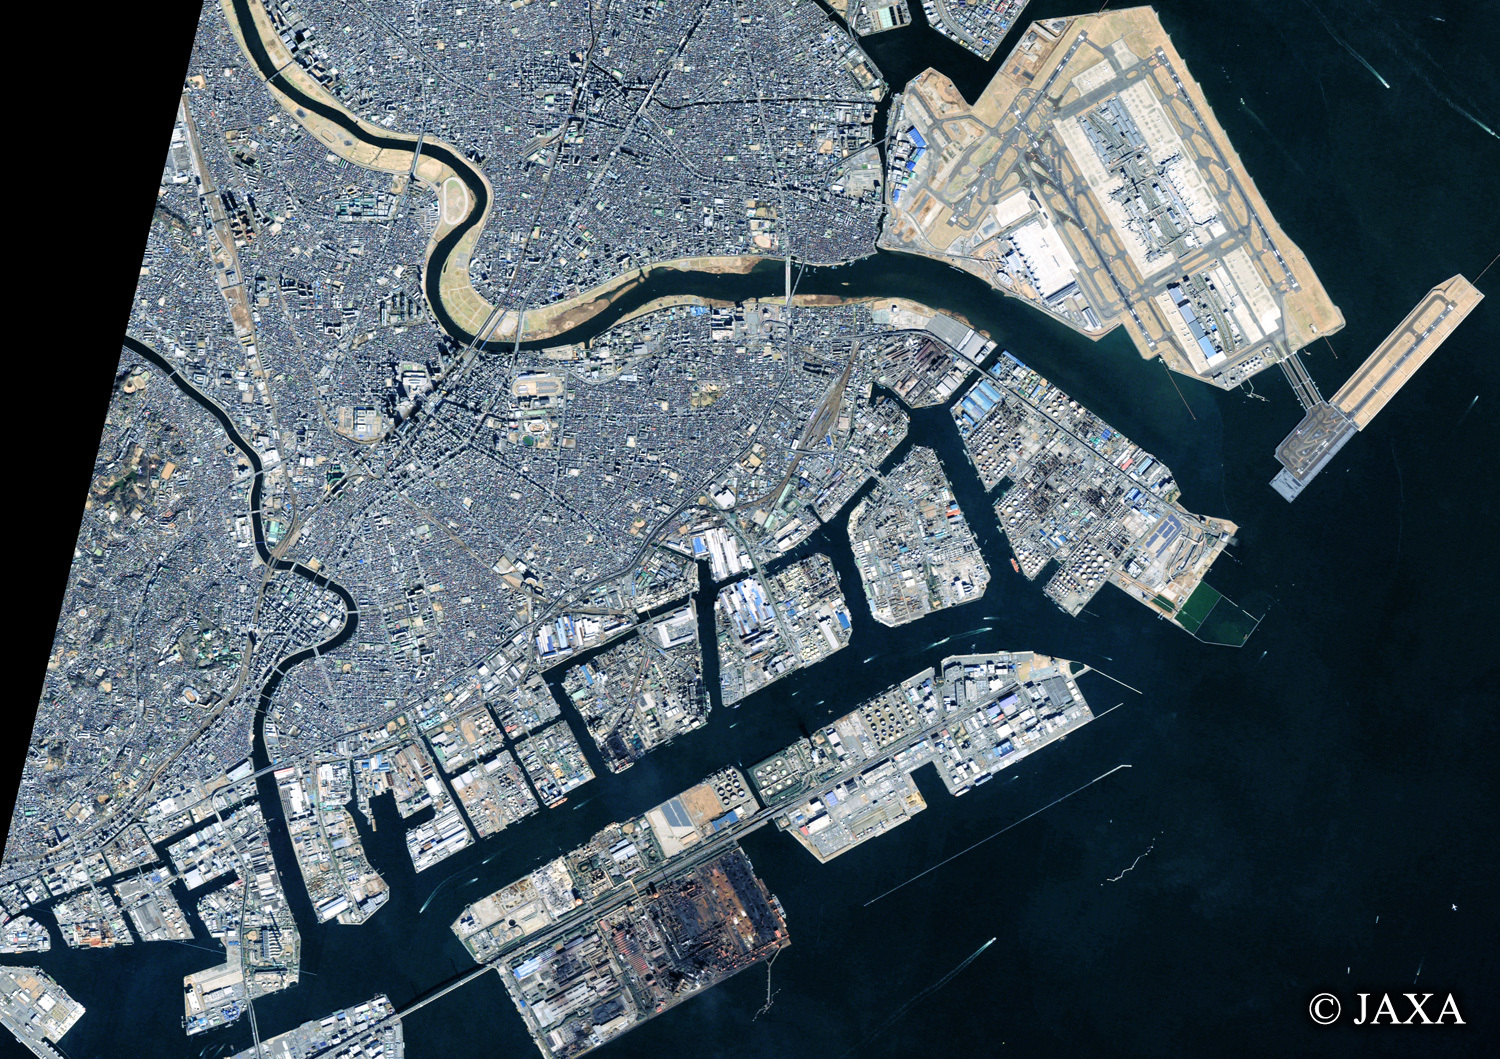 だいちから見た日本の都市 川崎市周辺:衛星画像